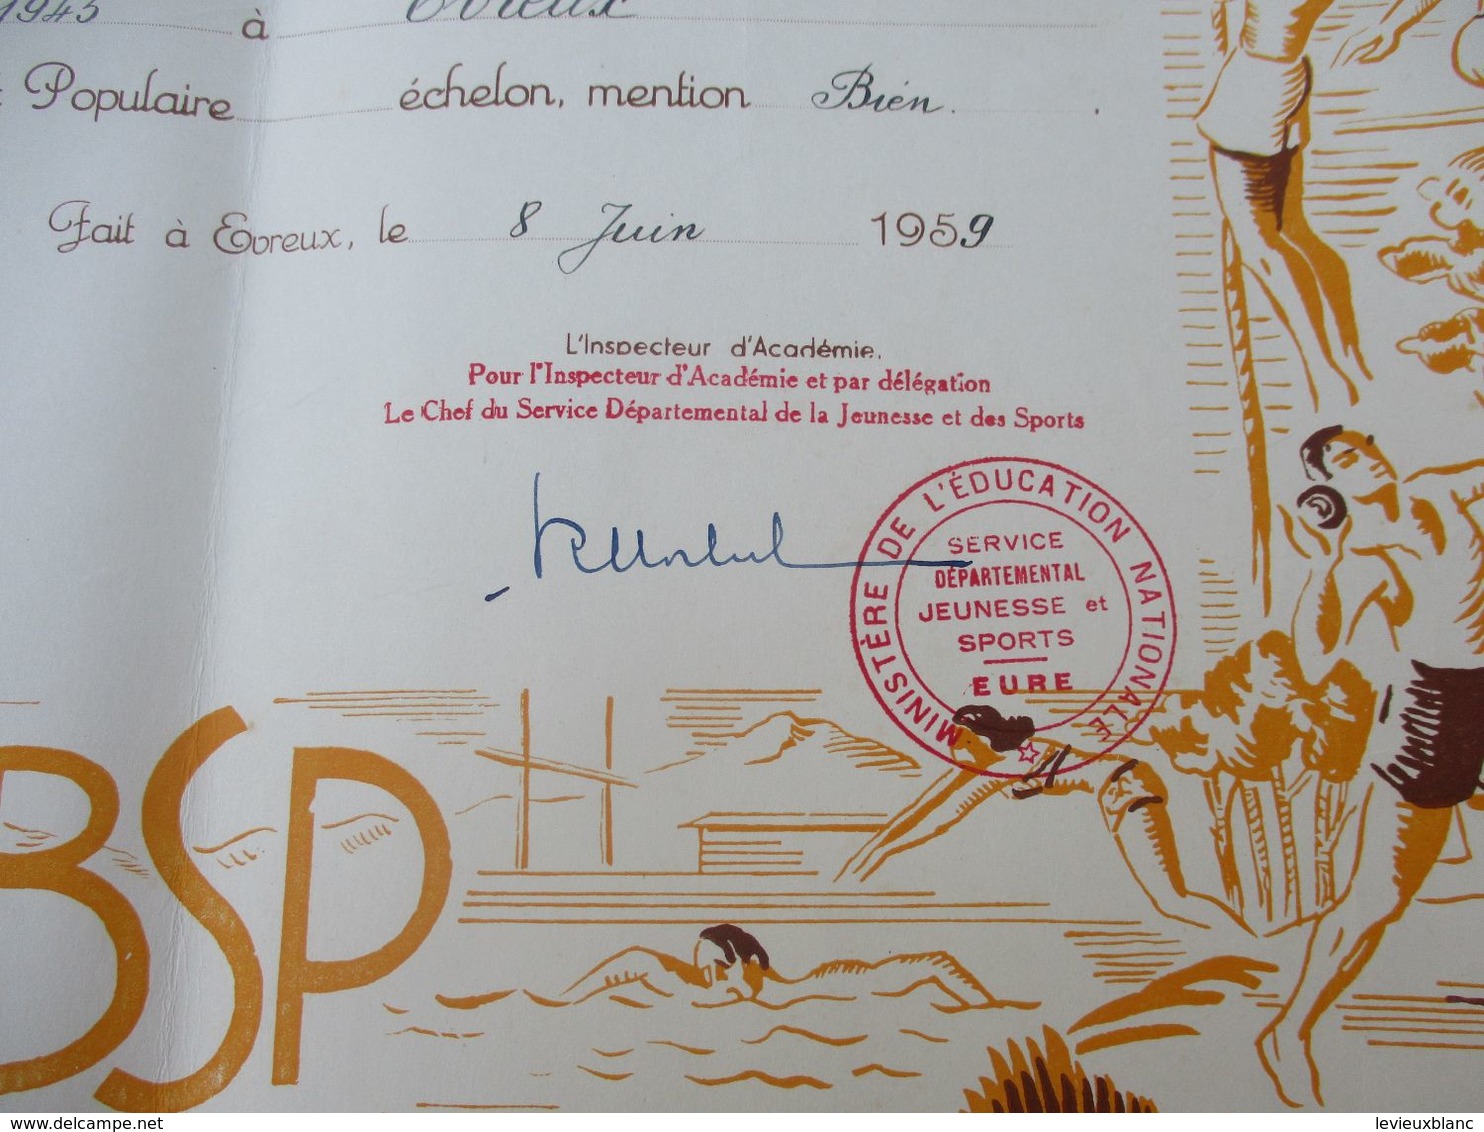 Brevet Sportif  Populaire/Académie De CAEN/ Département De L'Eure//Duval JP/Evreux /1959   DIP231 - Diploma & School Reports